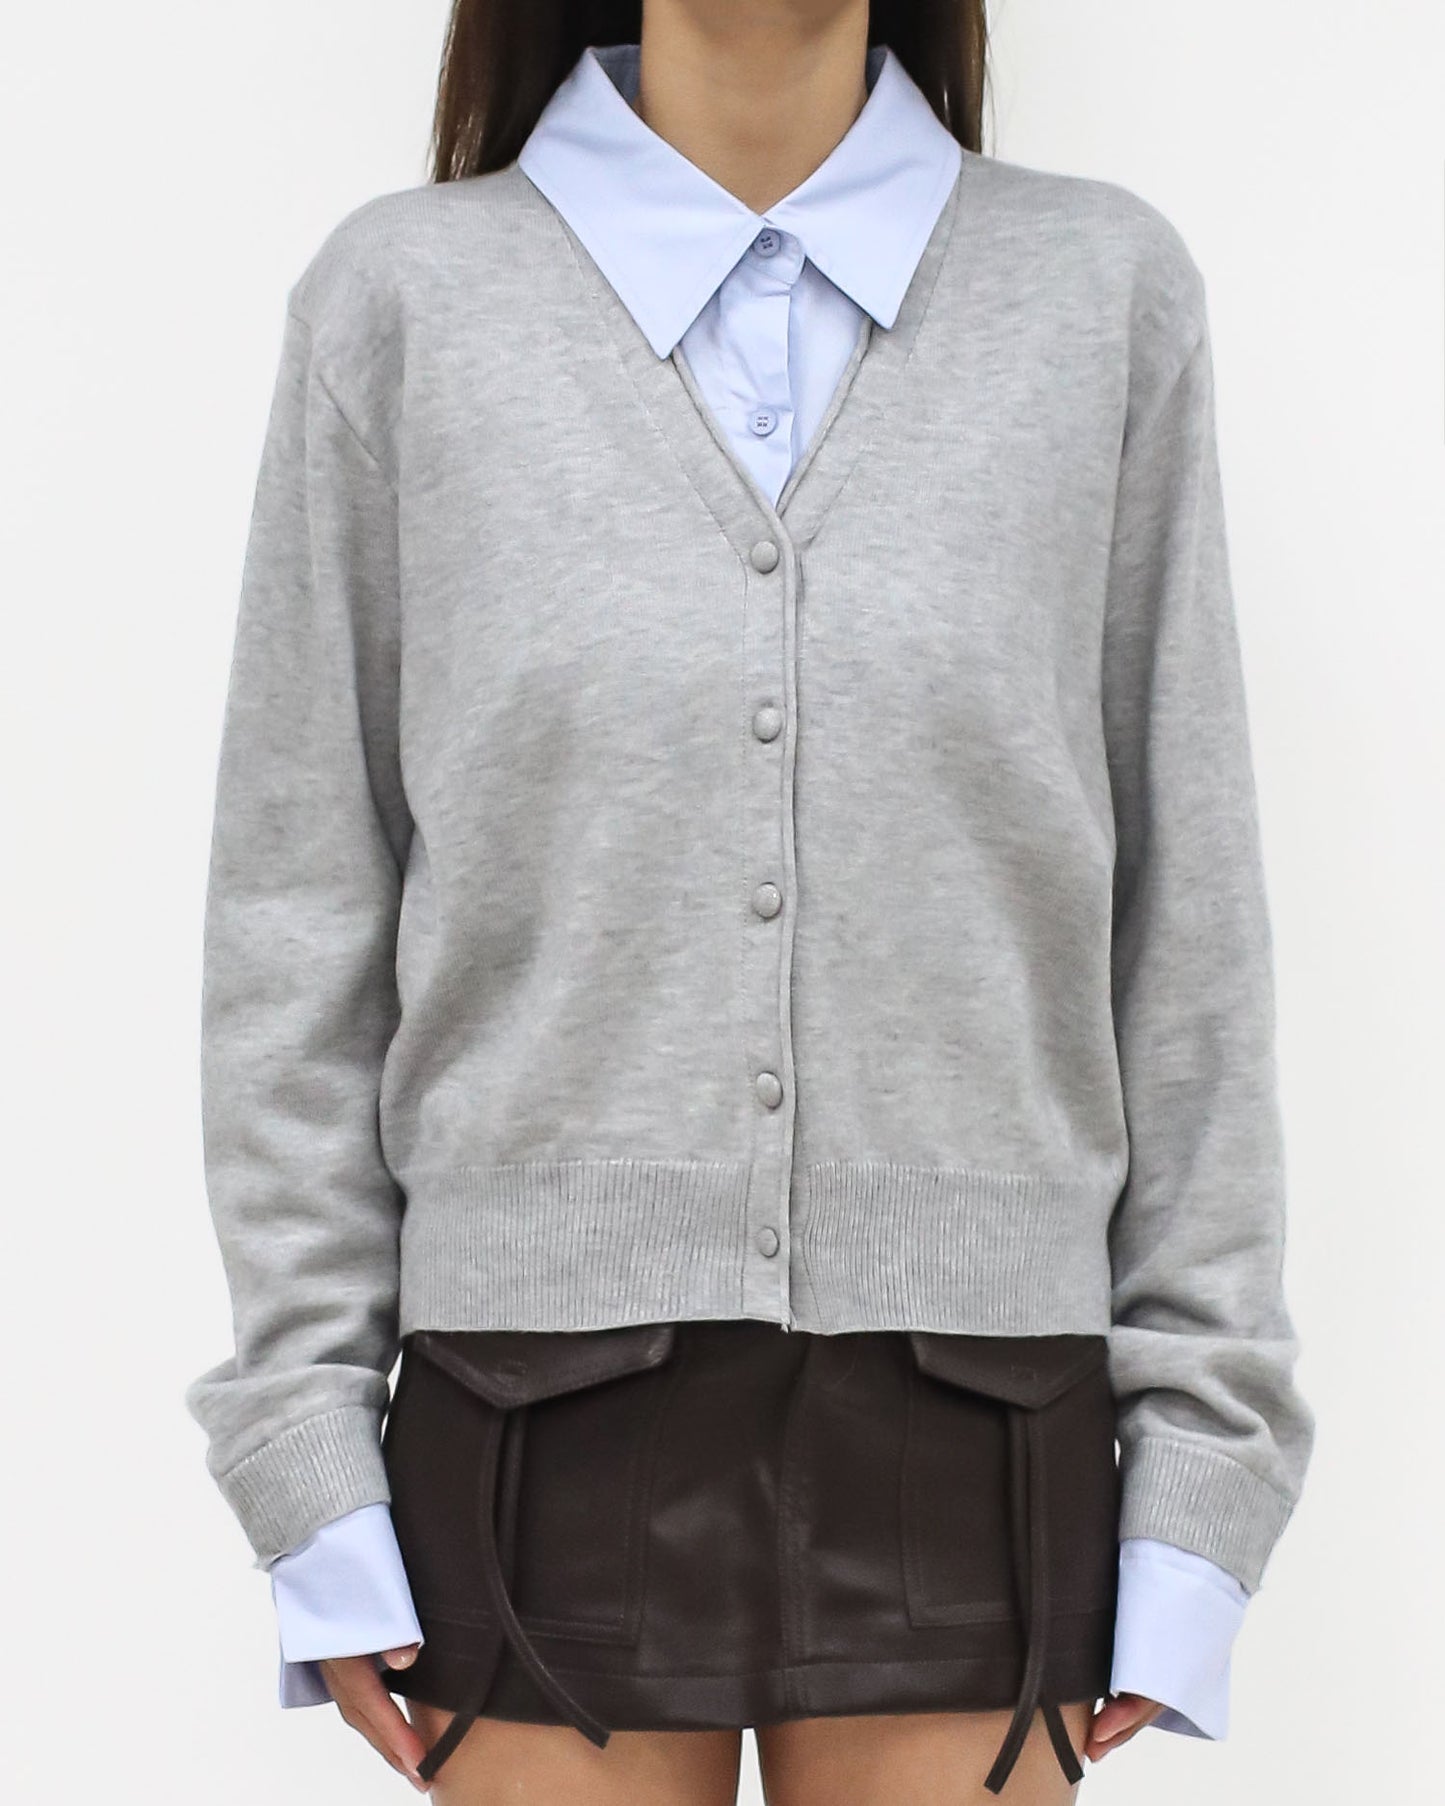 grey knitted & blue shirt collar cuffs cardigan *pre-order*